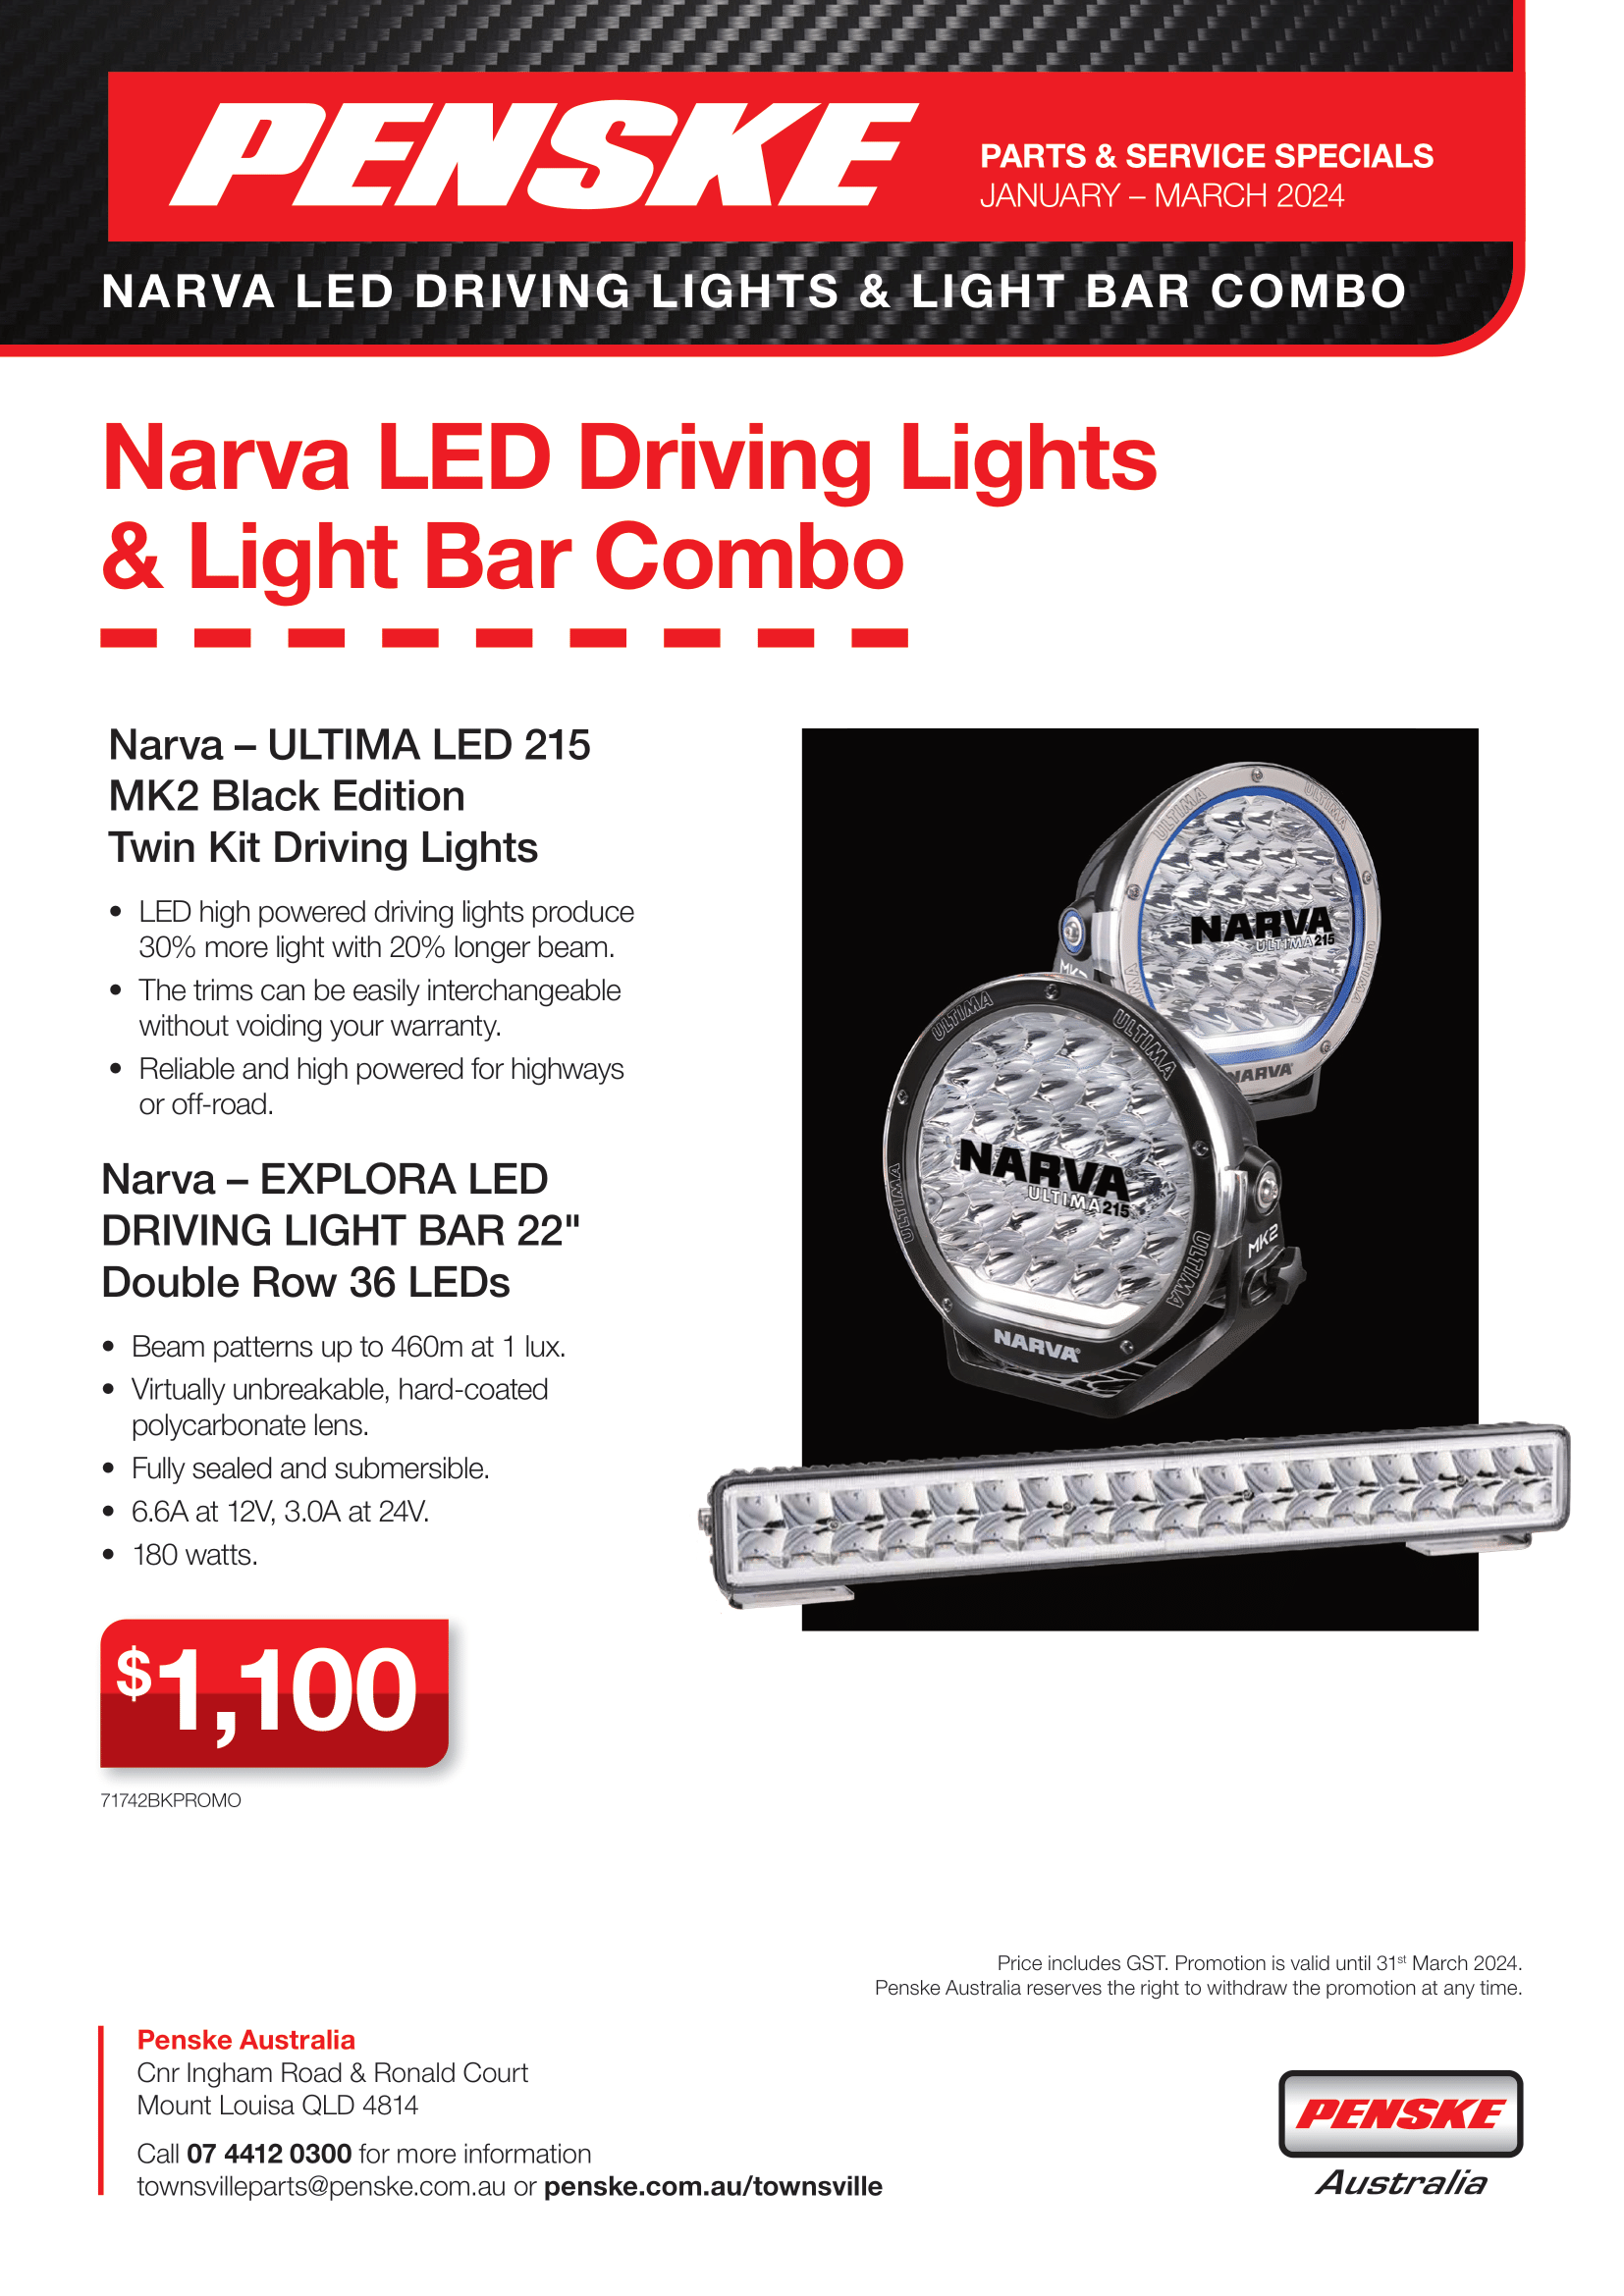 Narva LED Driving Lights Promotion